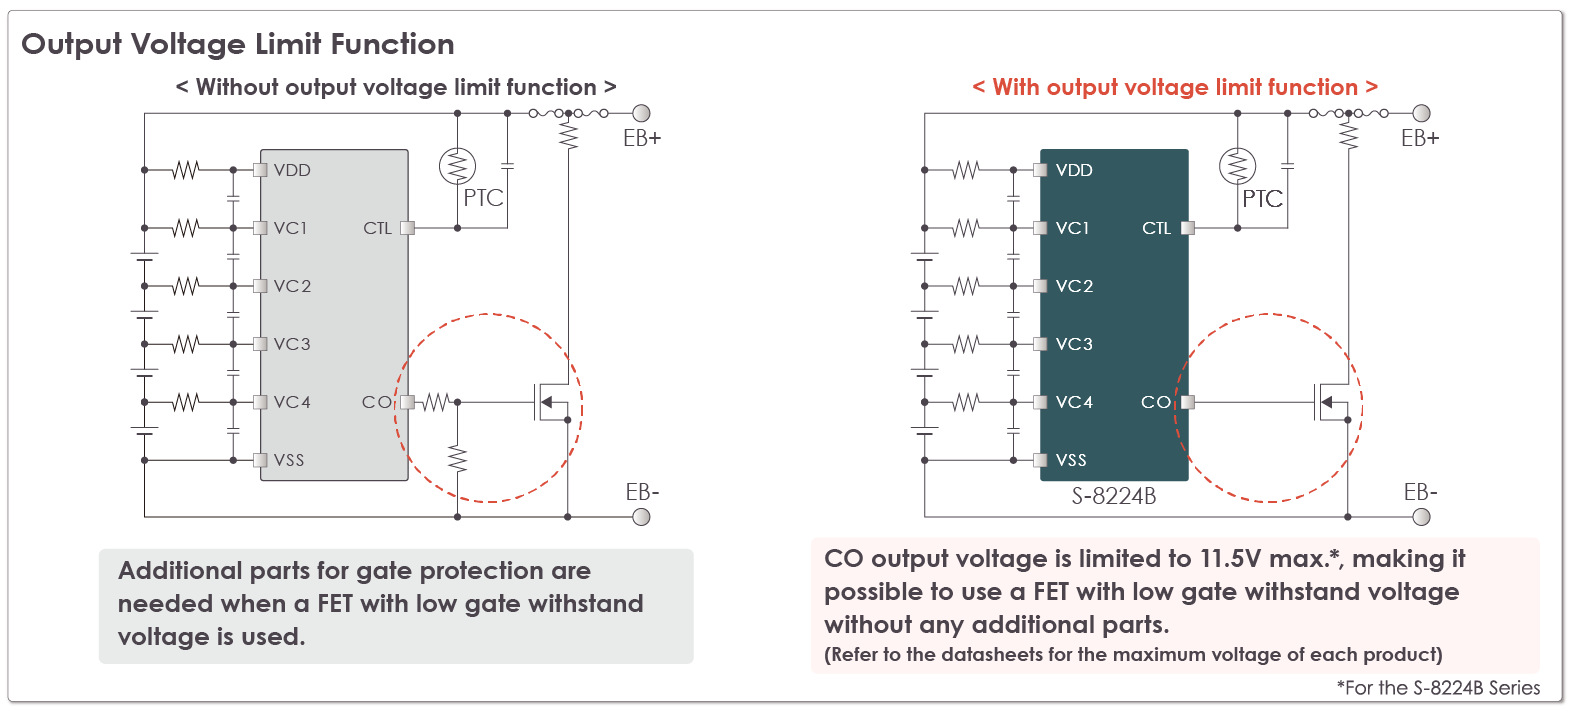 Function description: Output voltage limit function